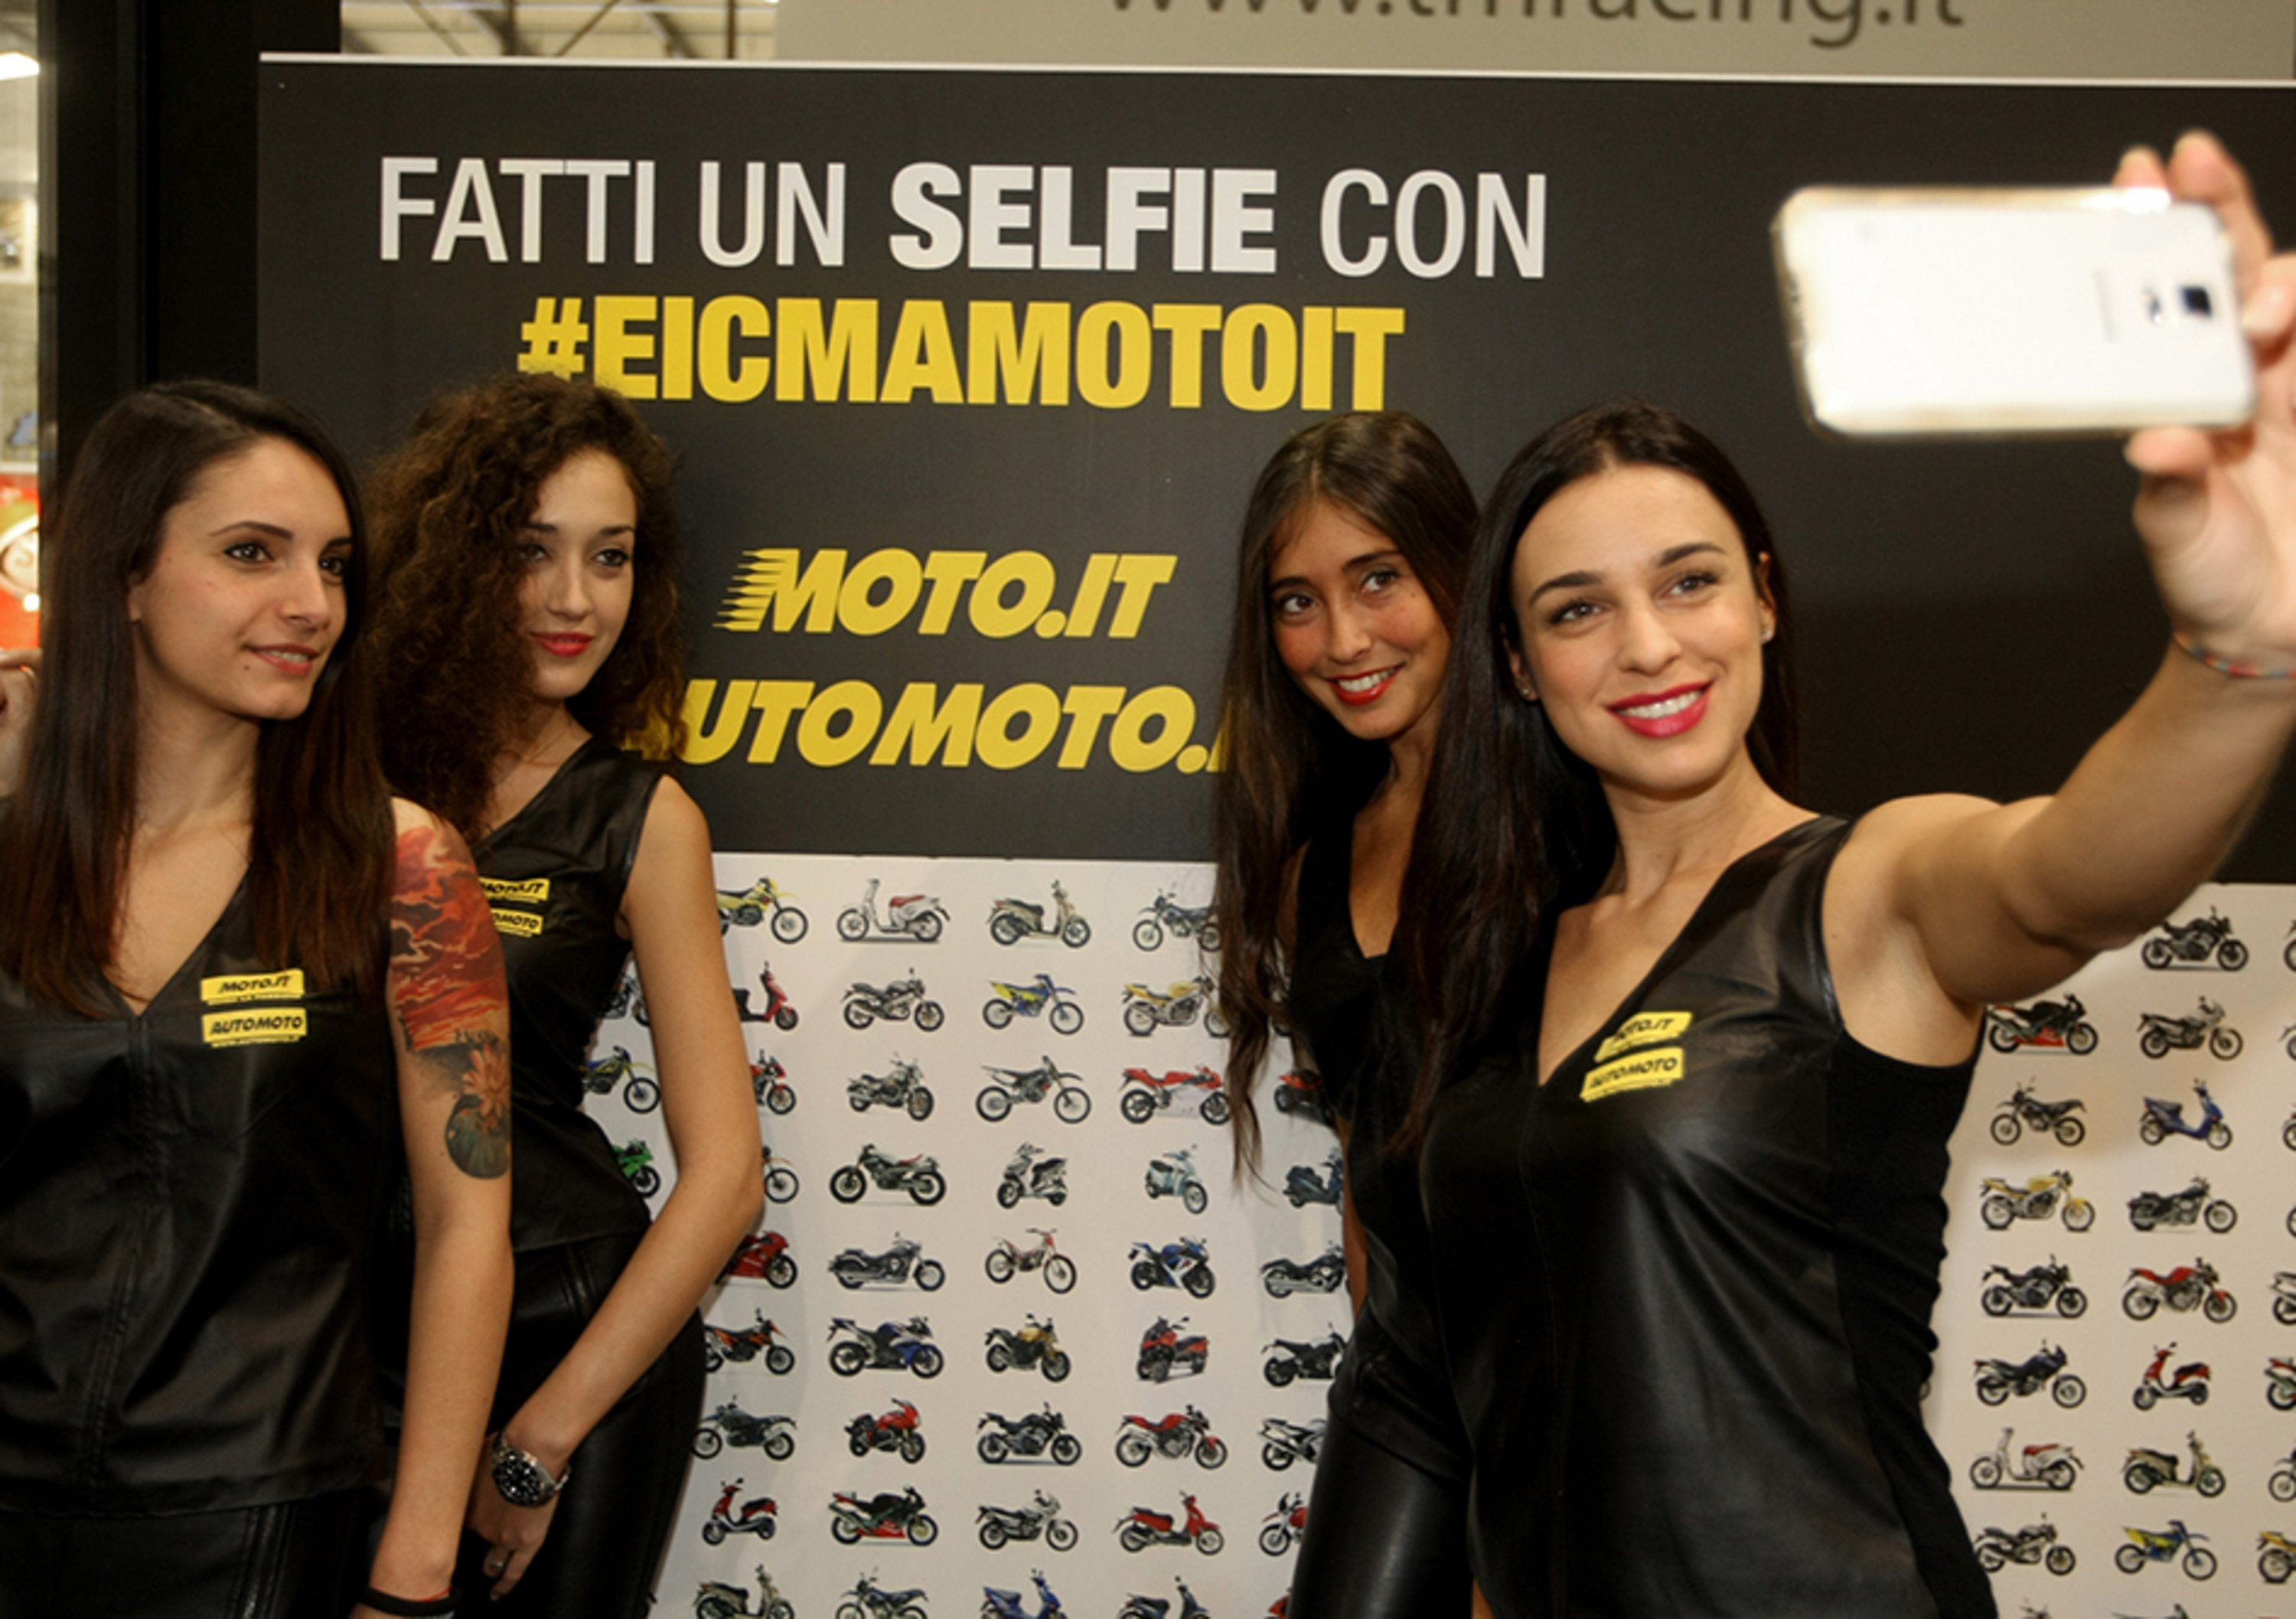 Moto.it, leader di settore nel mercato moto usate e nuove, lancia ad EICMA il primo video a 360&deg; 